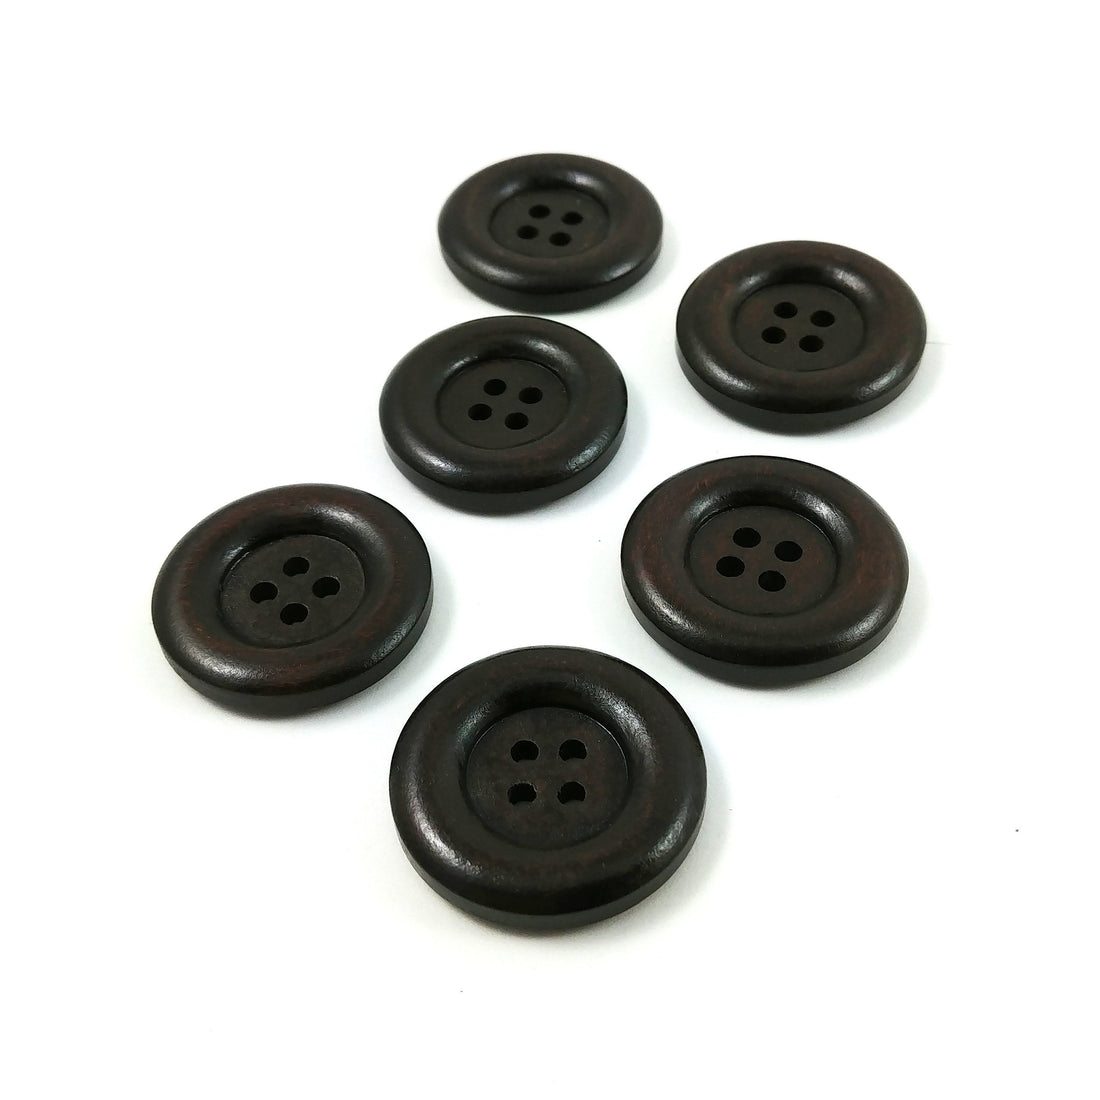 Bouton de bois brun foncé de 3cm - ensemble de 6 boutons en bois naturel